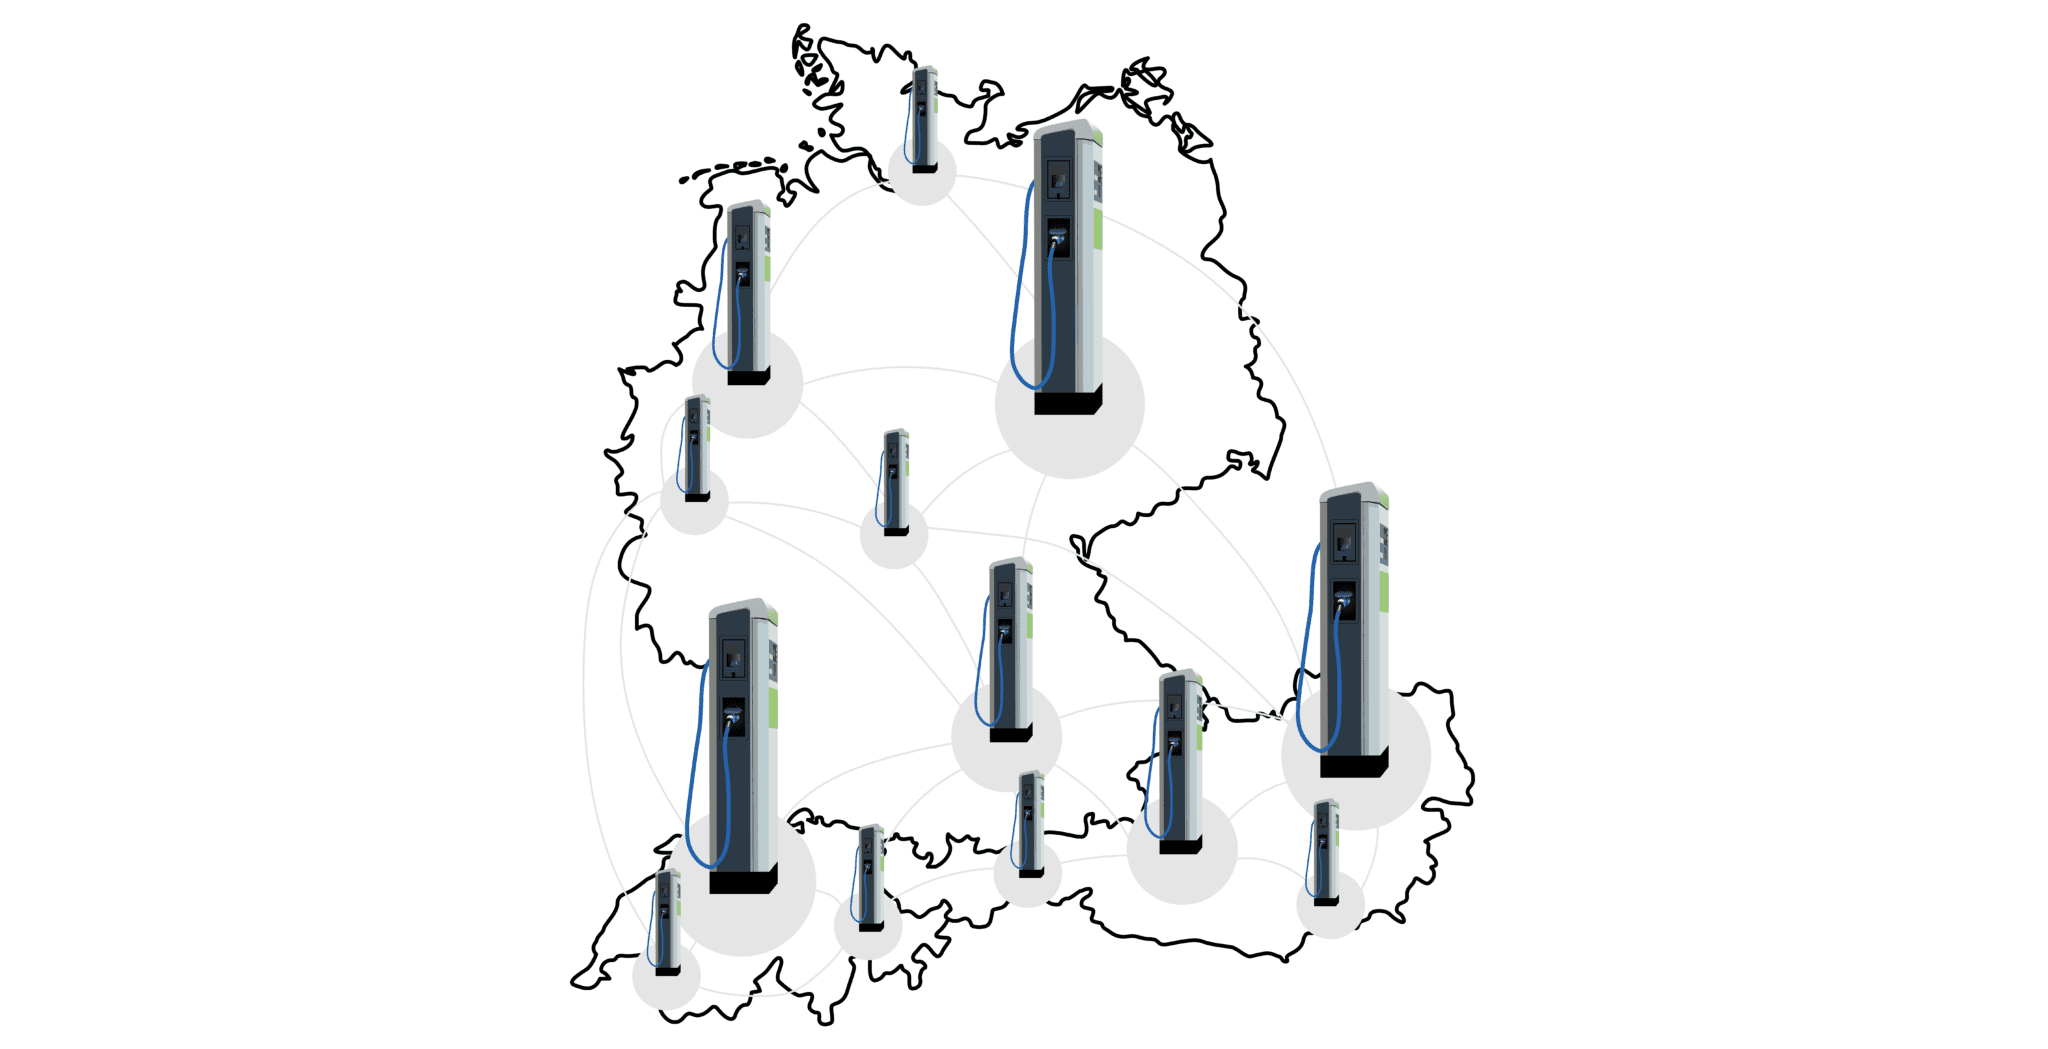 Ladesäulen in Österreich, Deutschland und der Schweiz